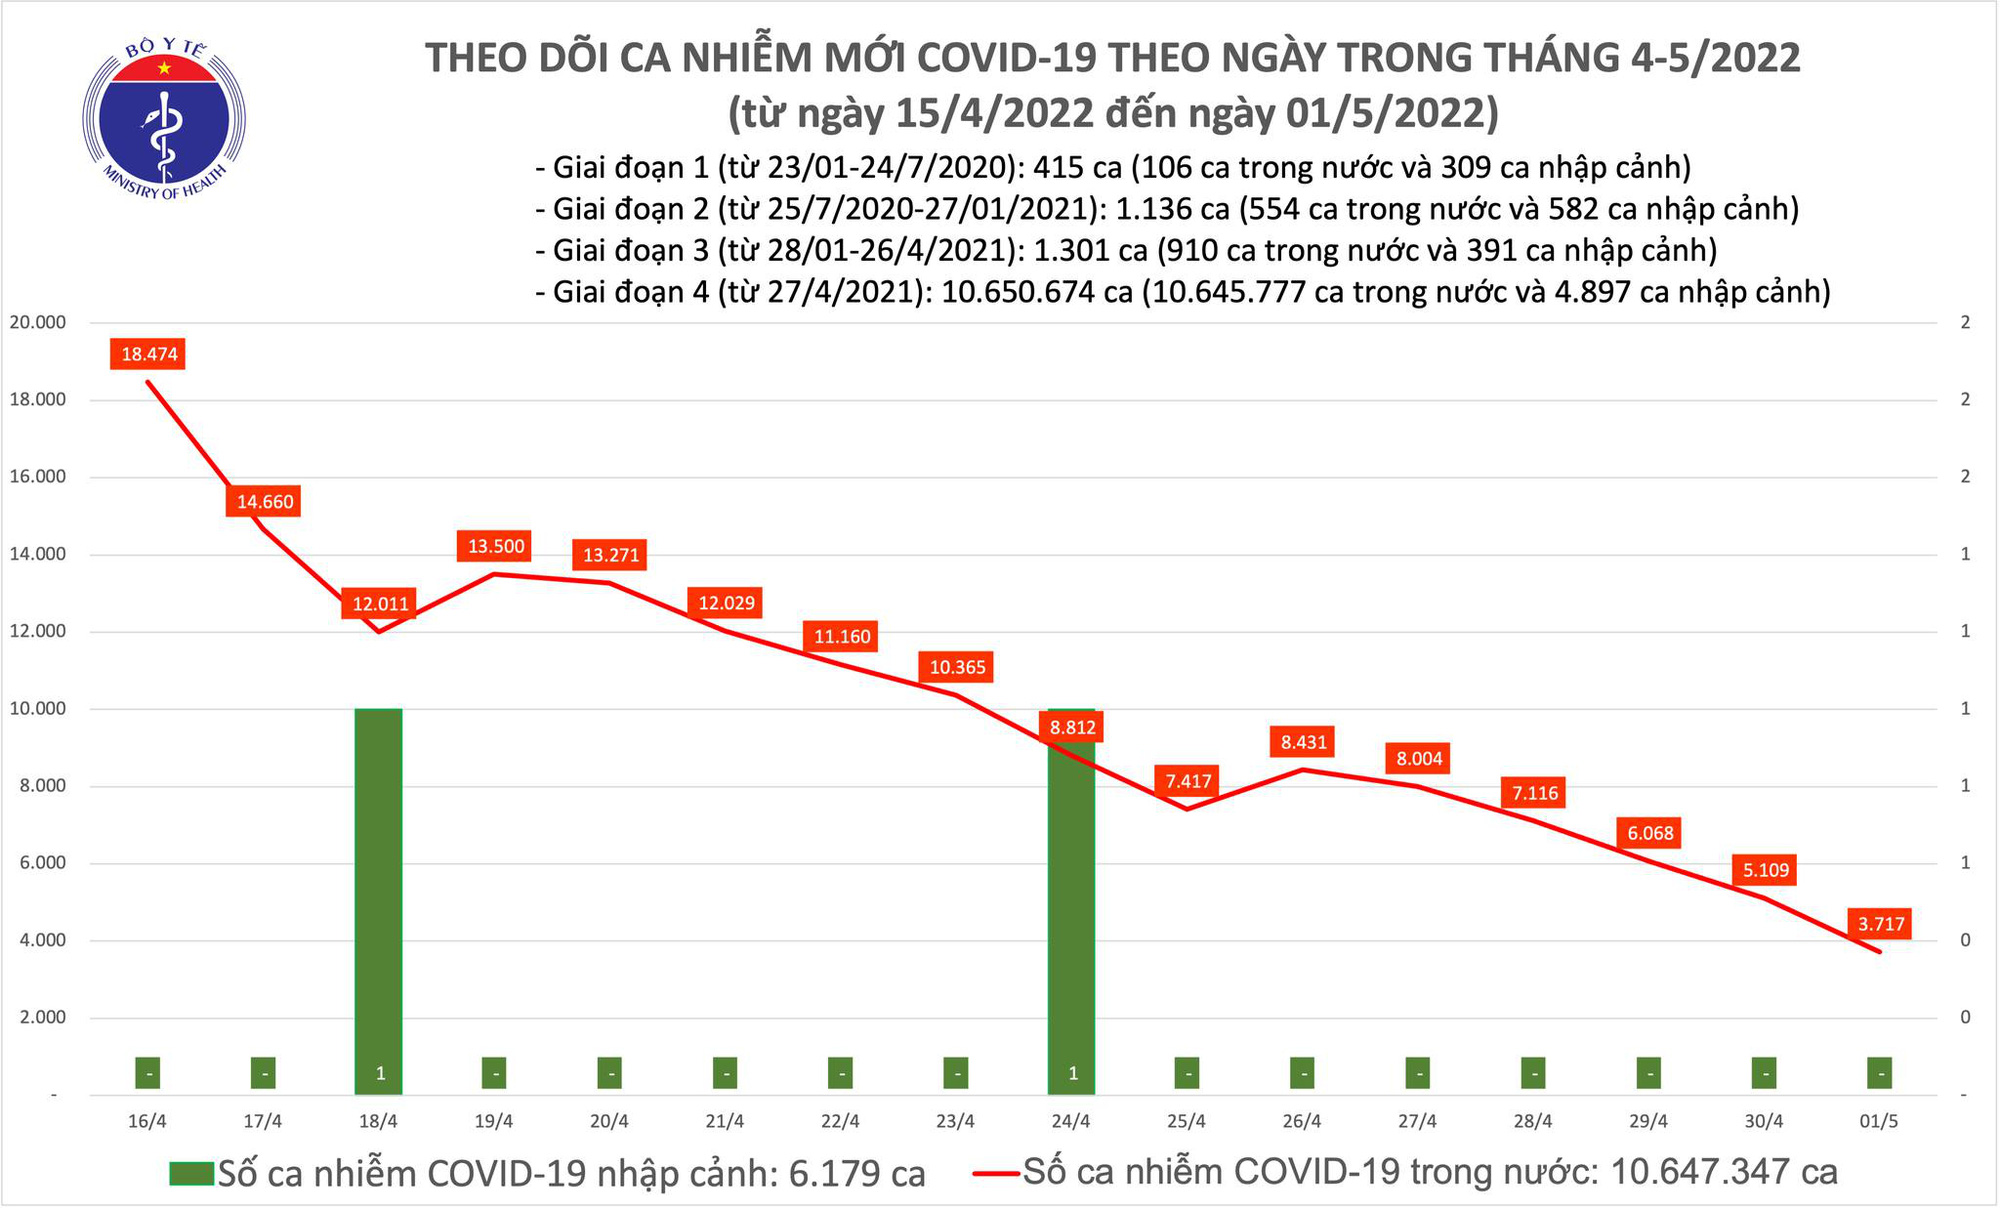 Covid-19 ngày 1/5: Có 3.700 ca Covid-19 mới và 1 ca tử vong - Ảnh 1.